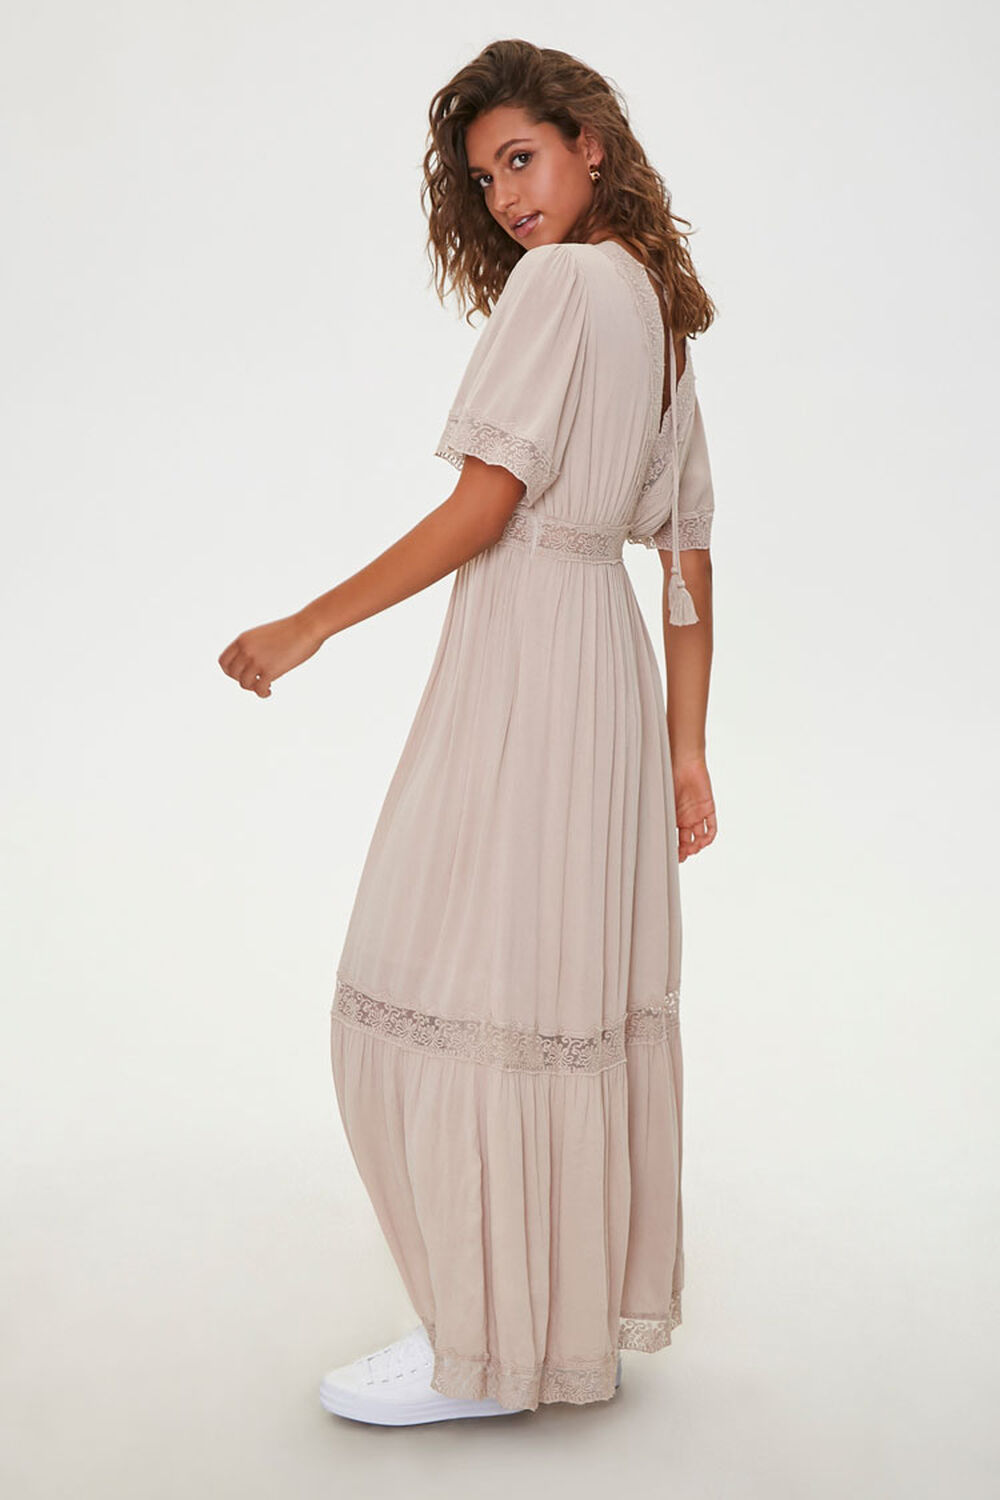 SAND   Lace-Trim Maxi Dress, image 2